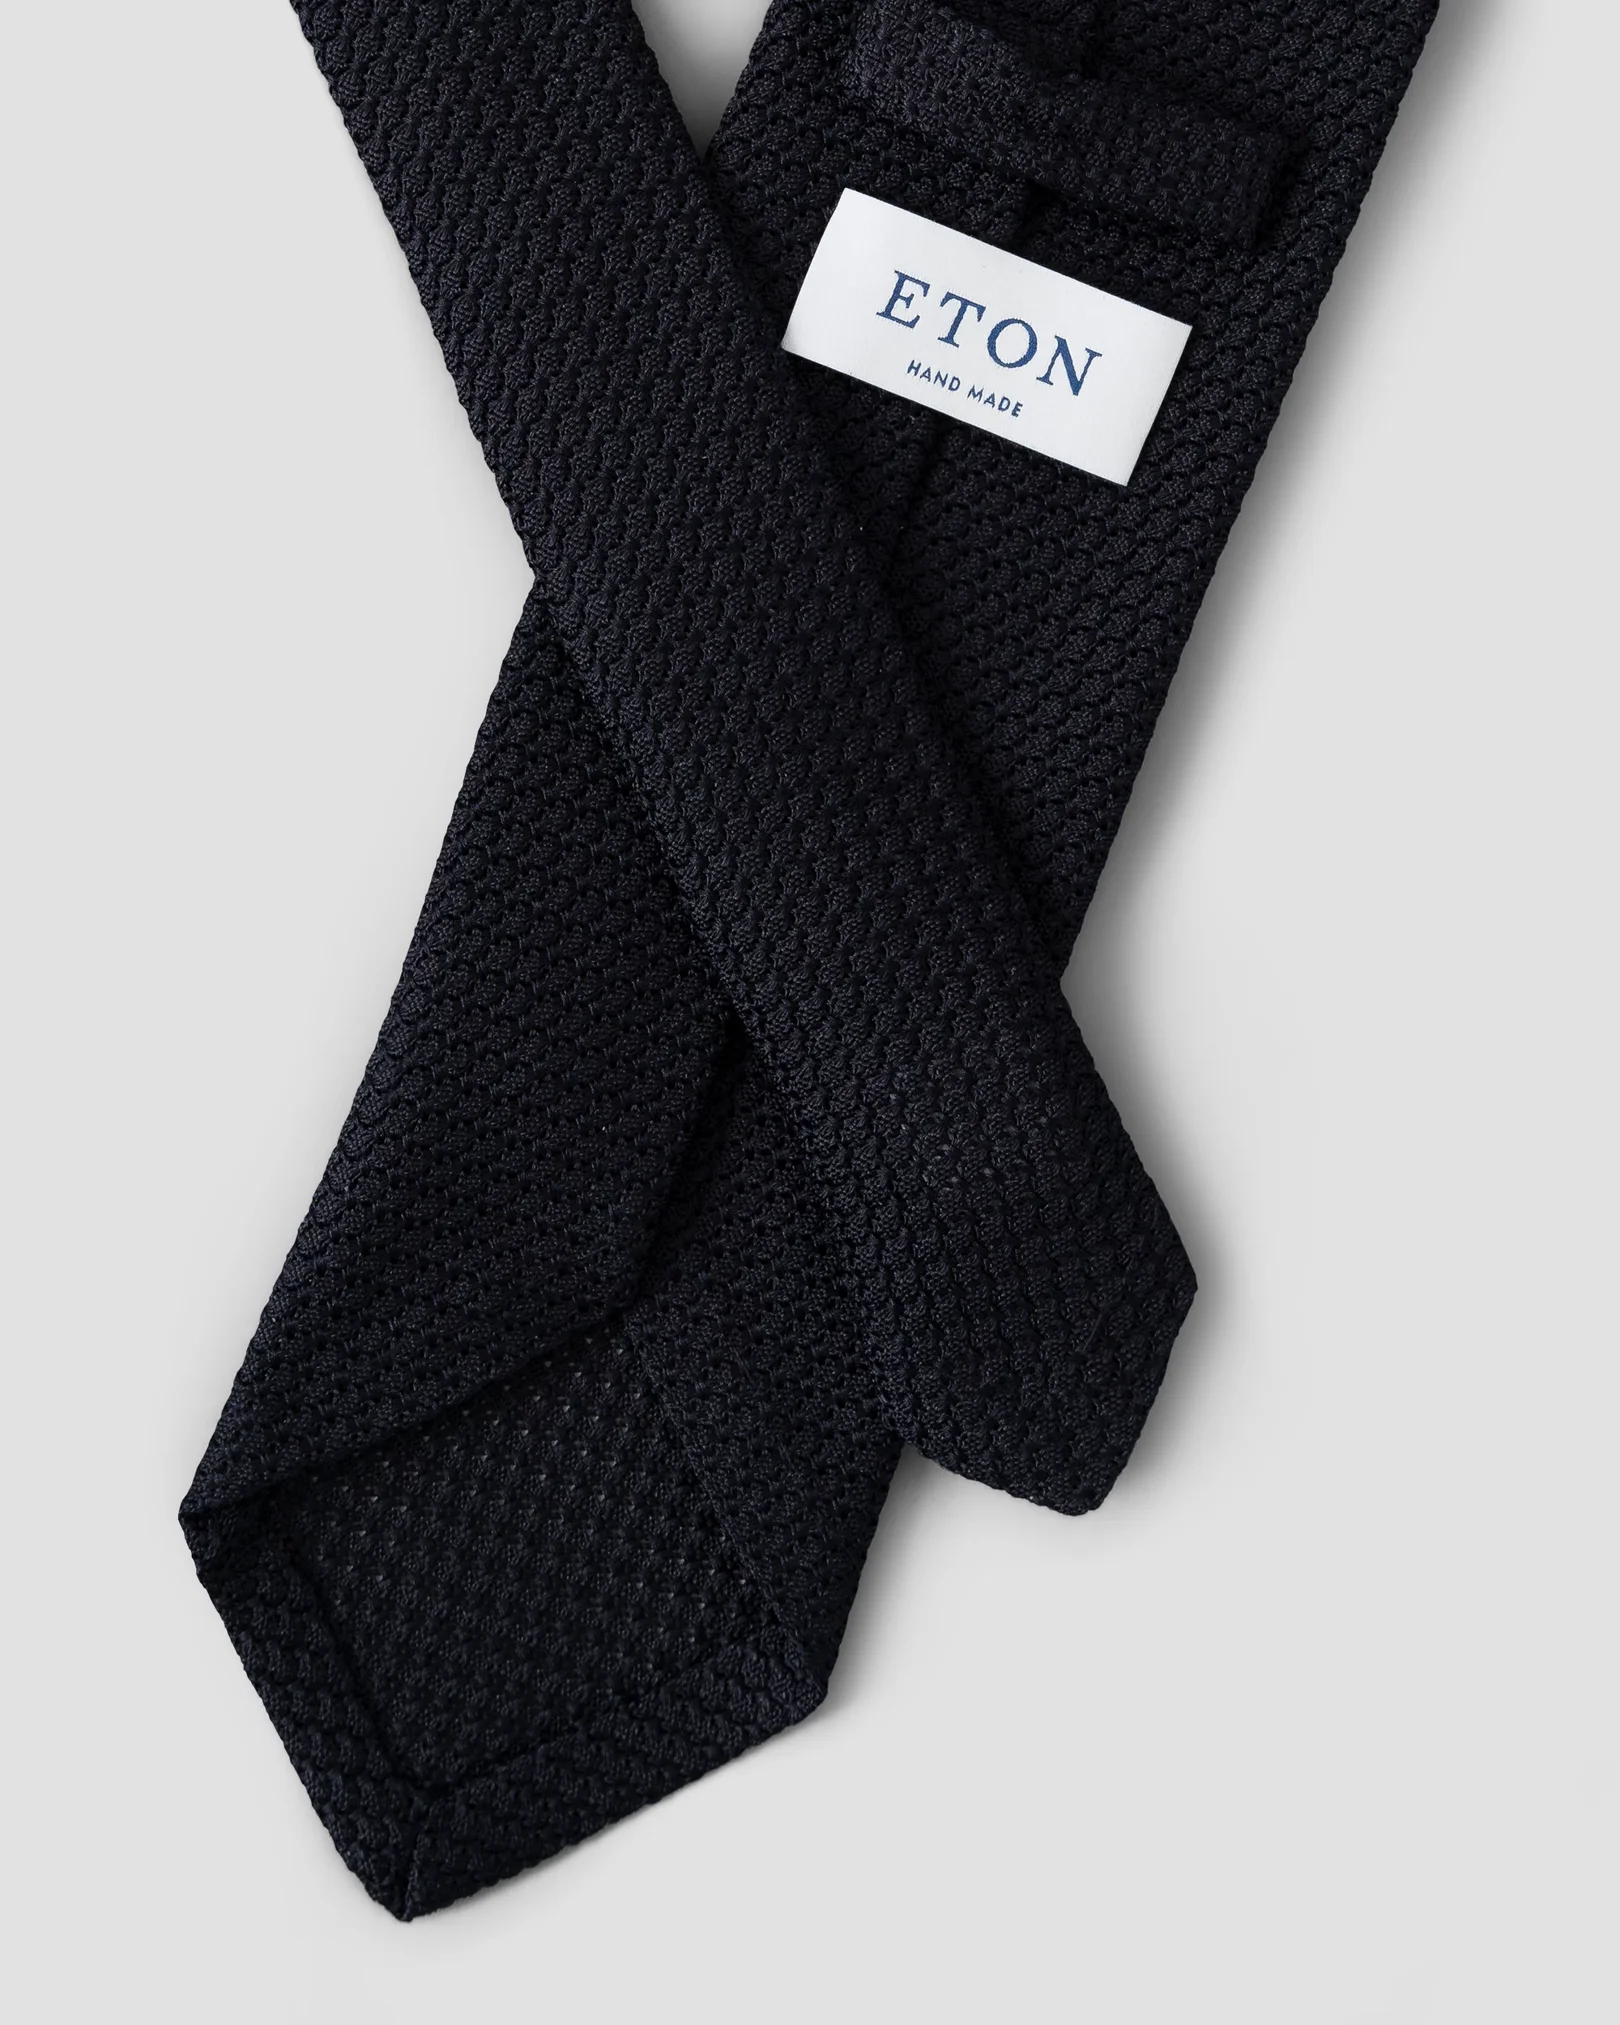 Eton - navy grenadine tie